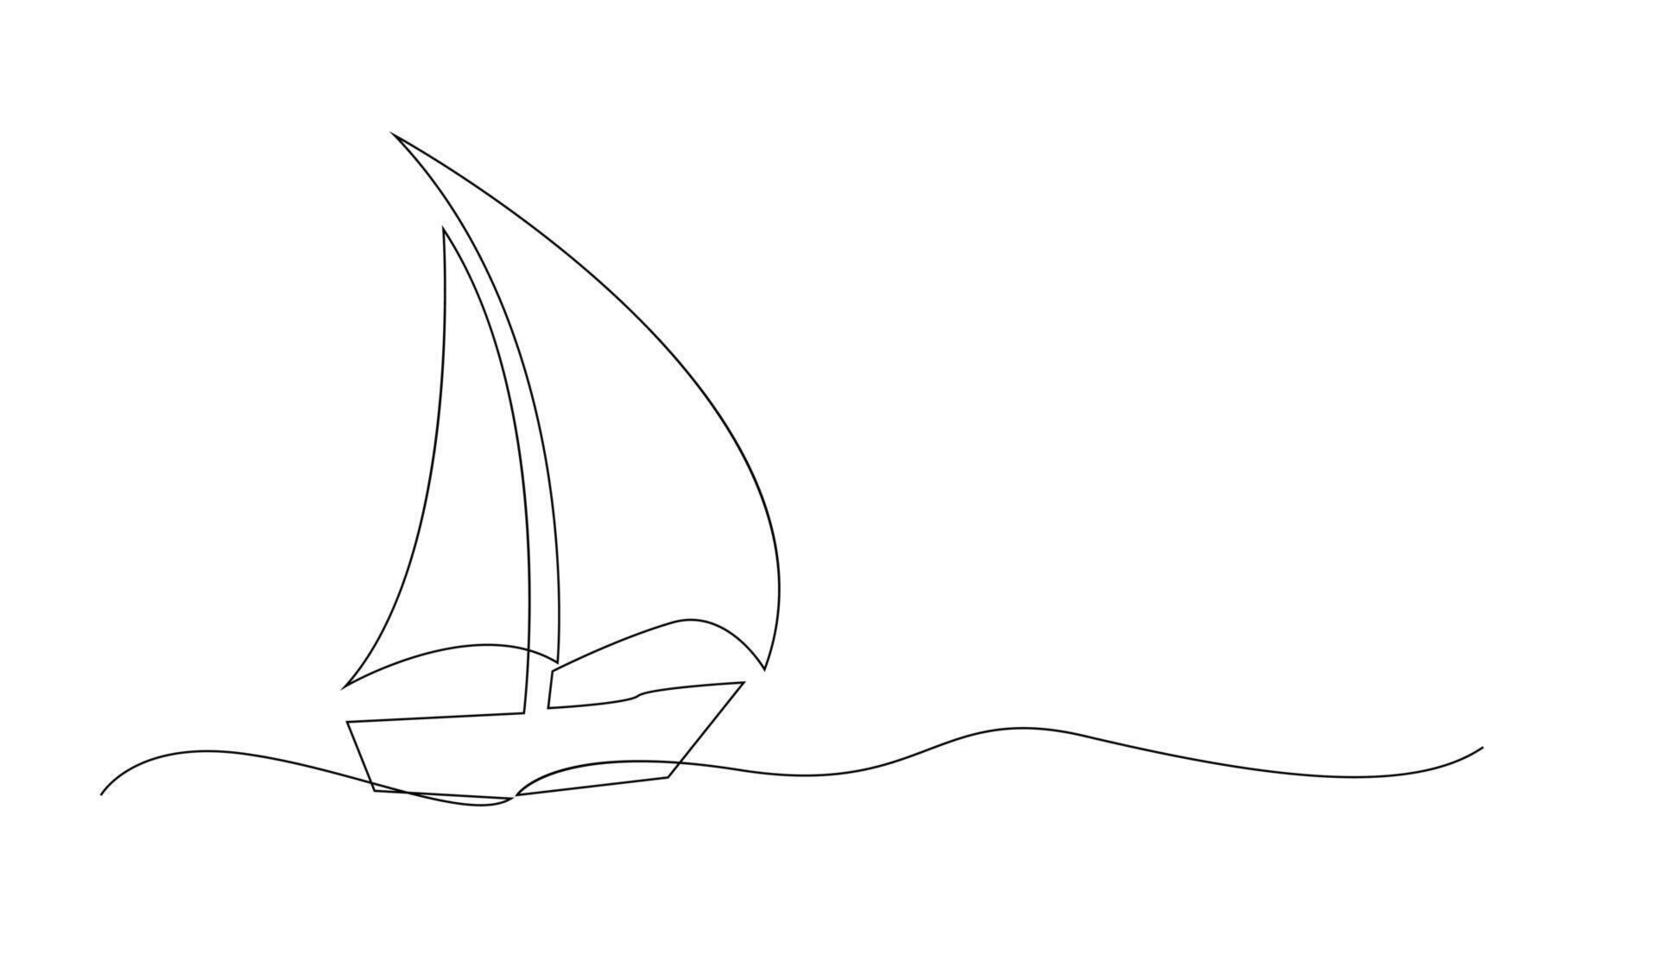 solteiro contínuo linha arte mar barco ícone. iate viagem turismo conceito silhueta símbolo Projeto. 1 esboço esboço desenhando vetor ilustração